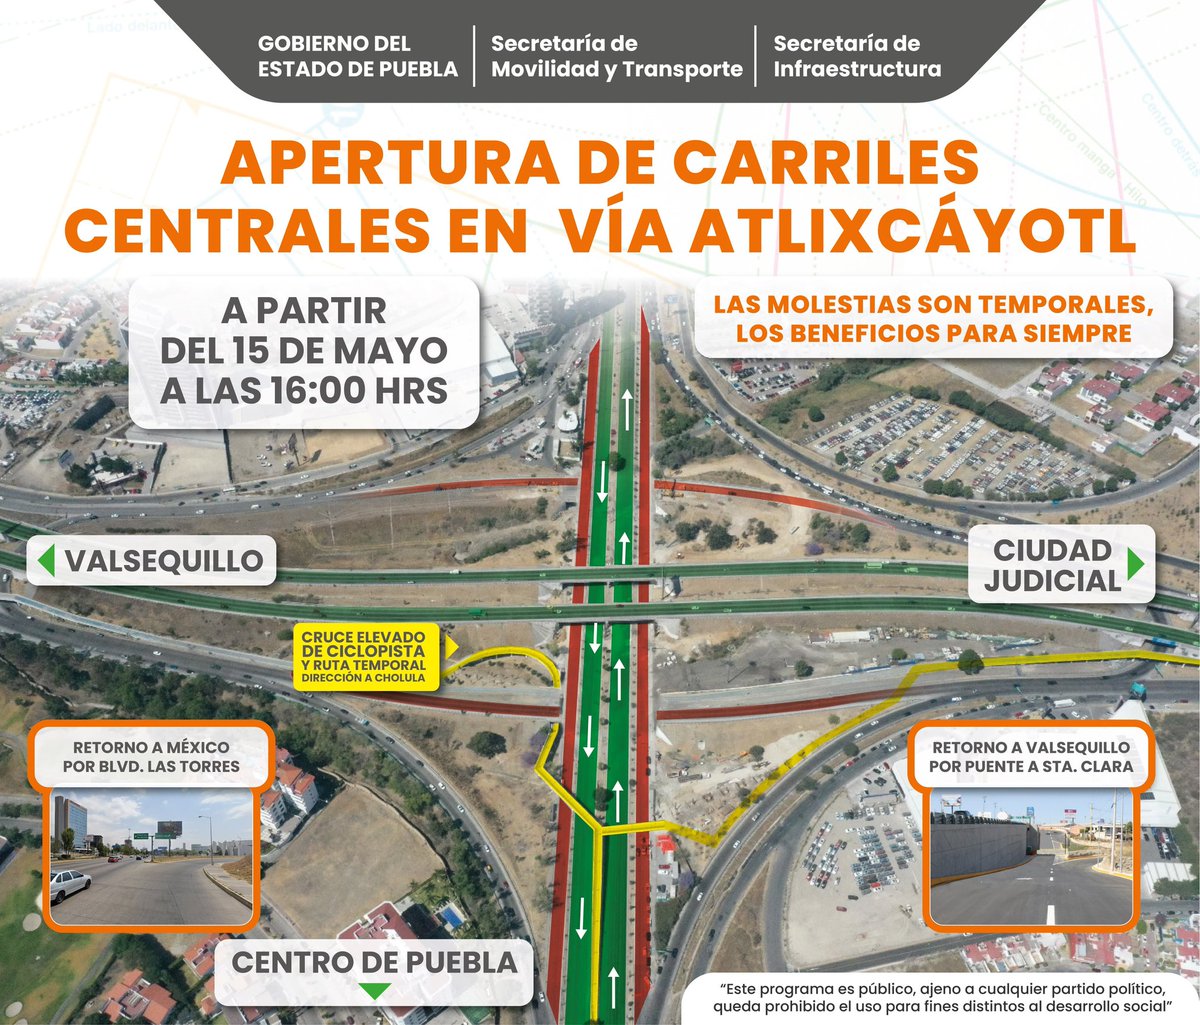 ⚠️ Atención Puebla Anuncia @Gob_Puebla apertura de carriles centrales en Vía Atlixcáyotl. Consulta la información aquí 👇